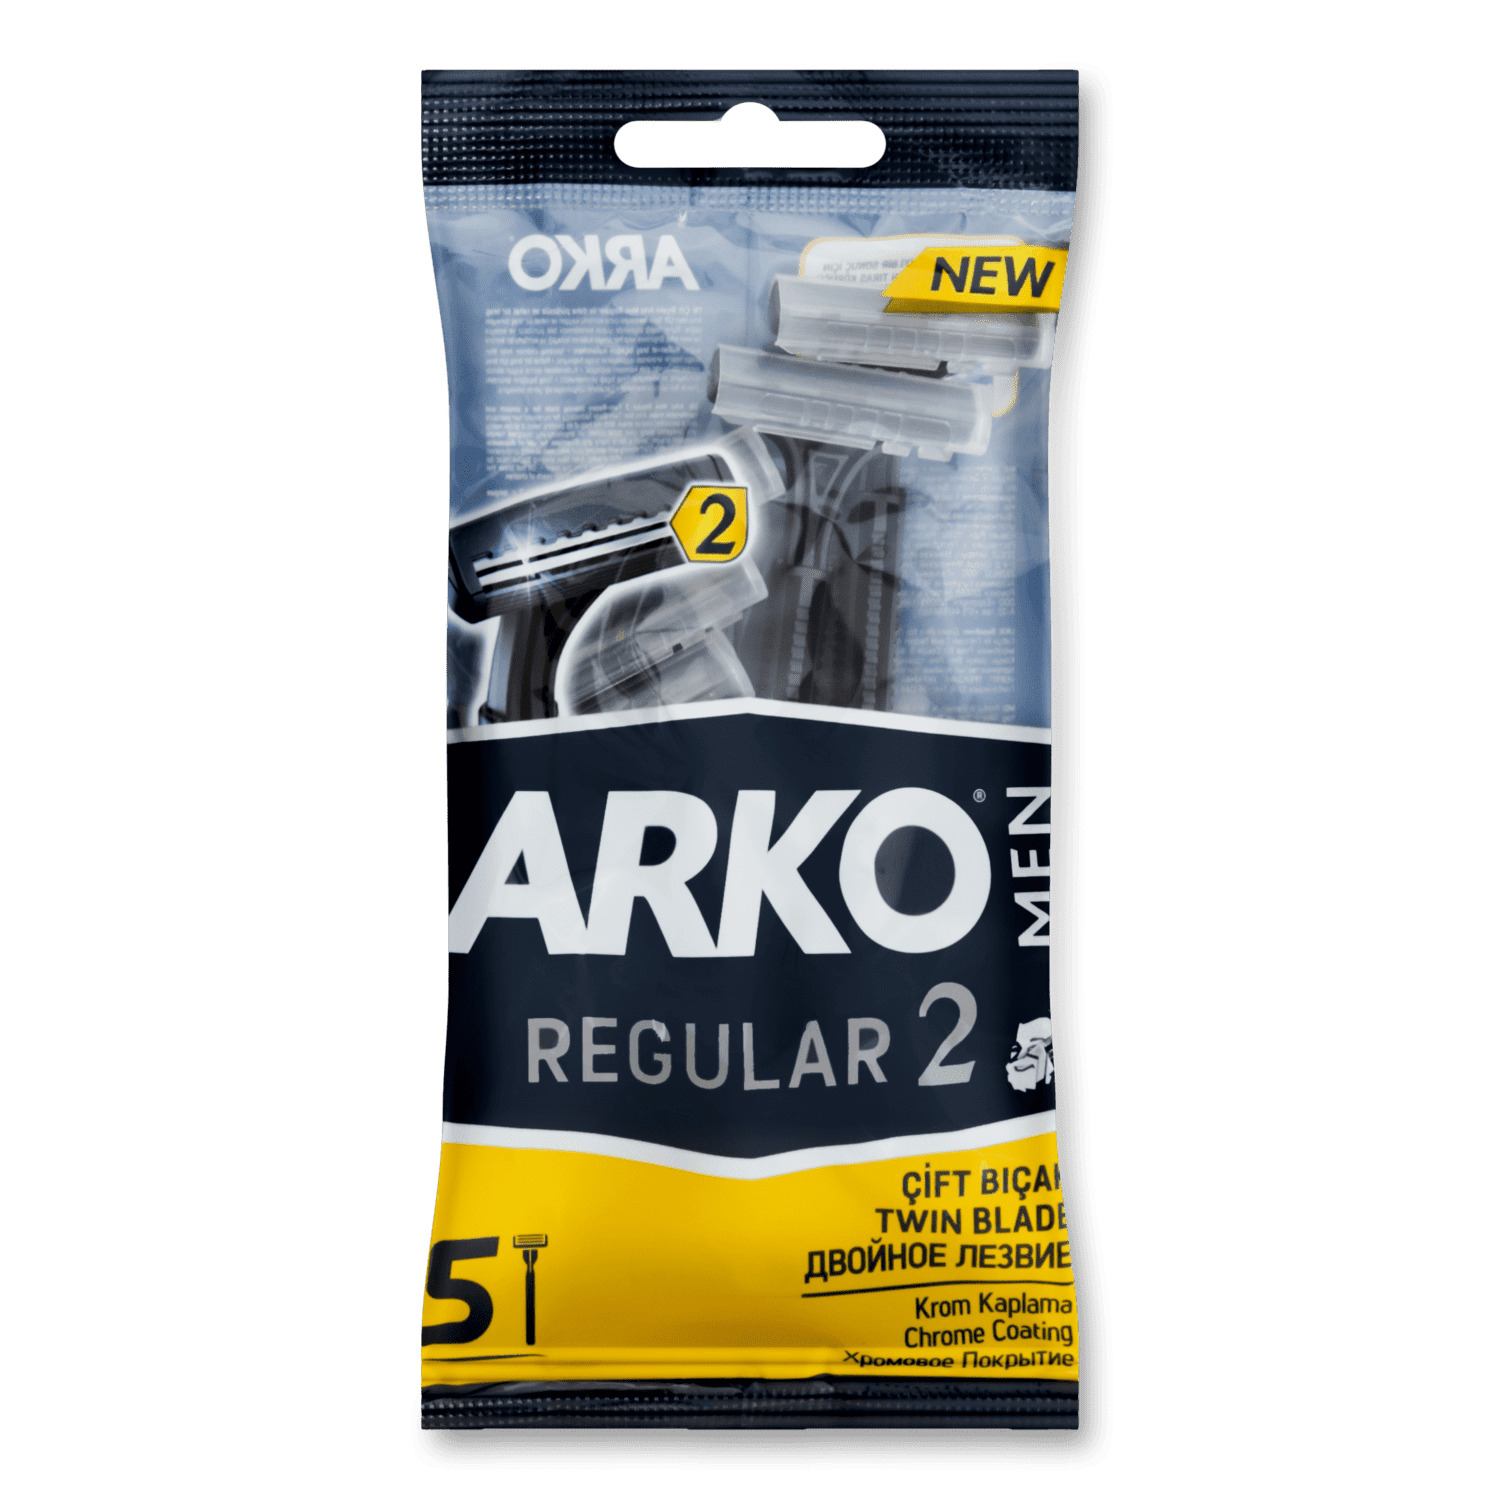 Станок для бритья Arko 2 лезвия